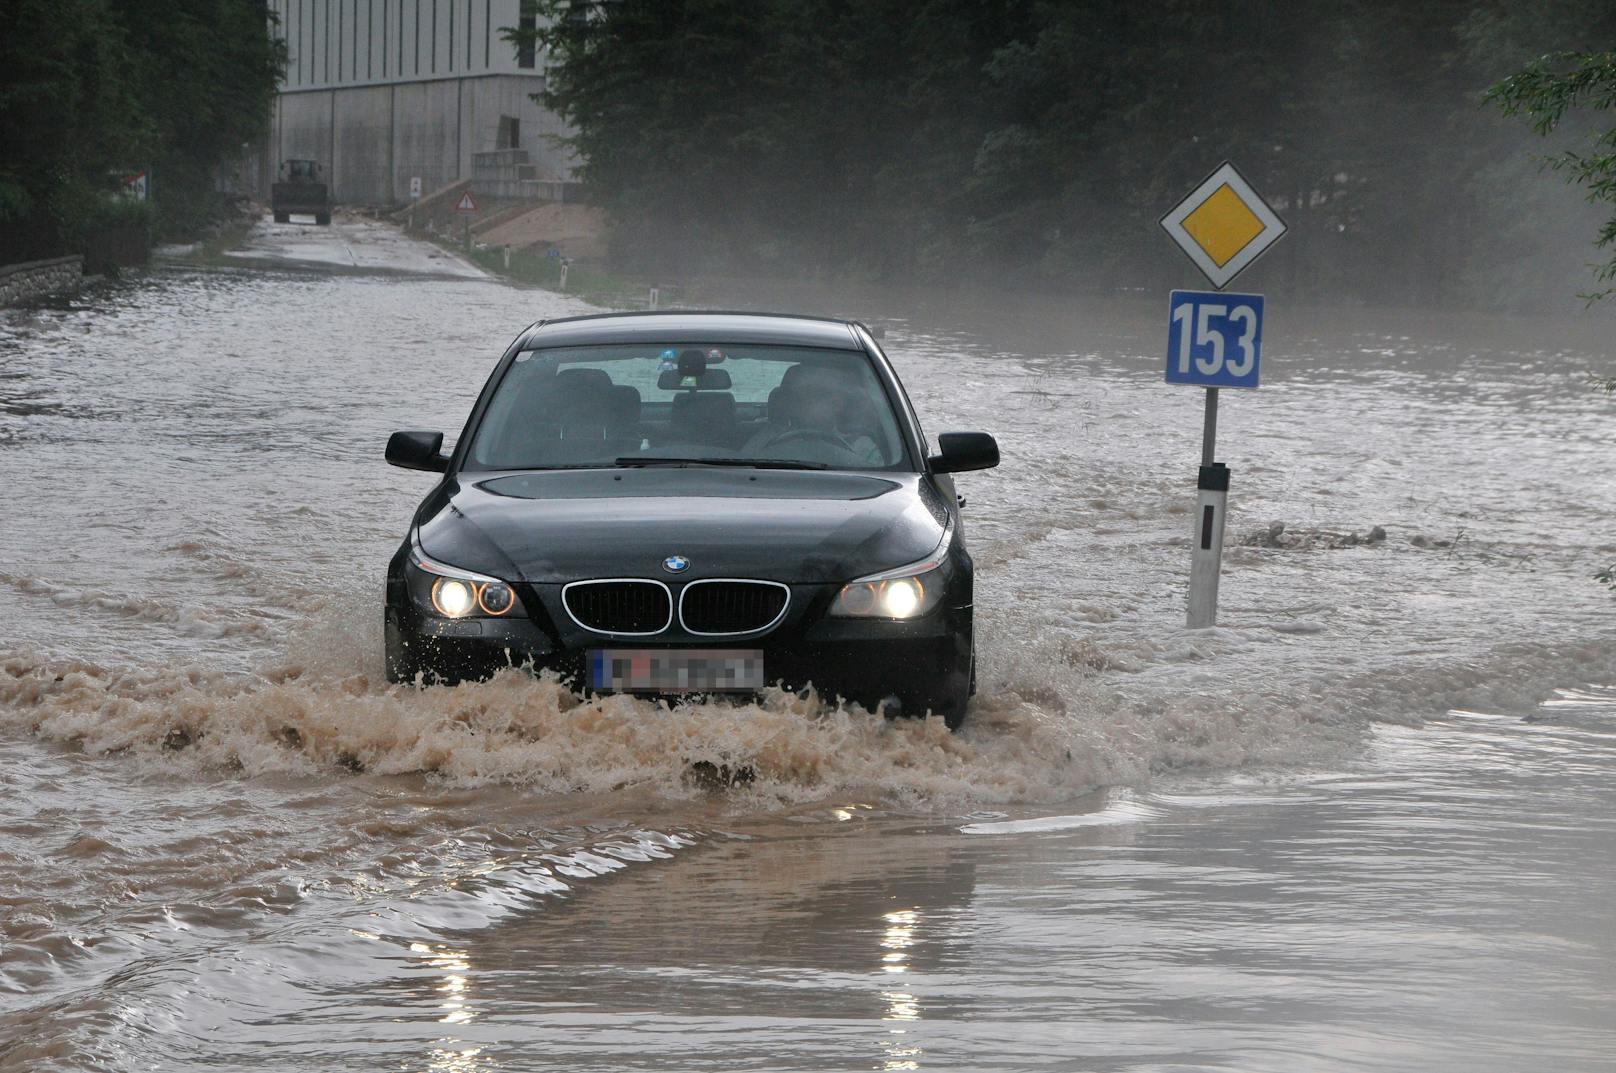 Wetter-Experten befürchten neue Überflutungen durch regenreiche Gewitter in Österreich. Archivbild.